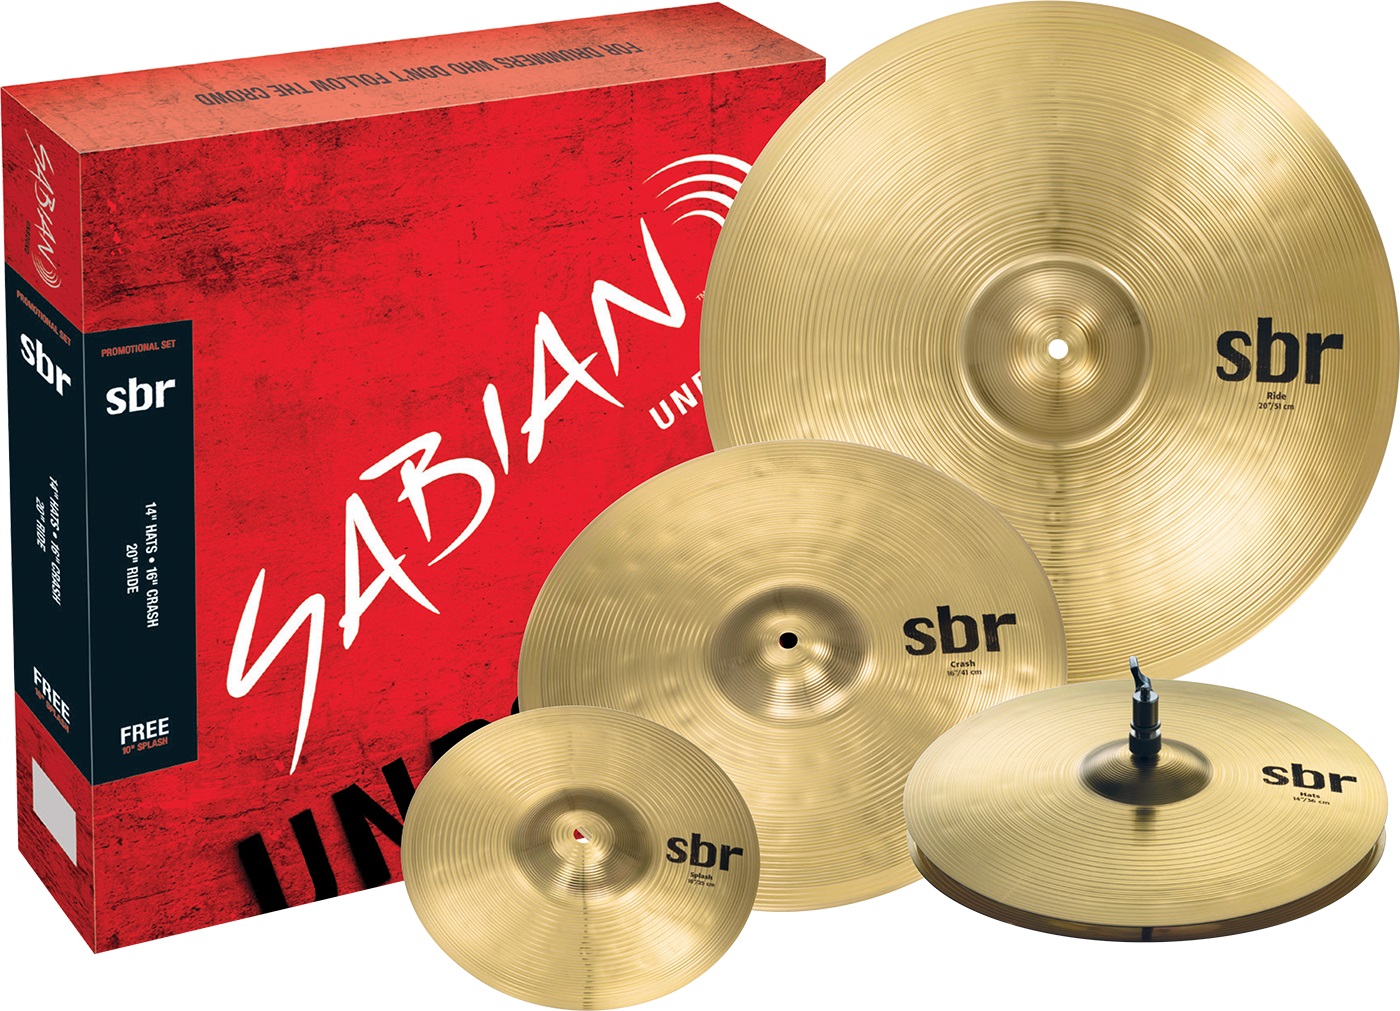 Тарелки, барабаны для ударных установок Sabian SBr Promotional Pack тарелки барабаны для ударных установок sabian 17 hhx x treme crash